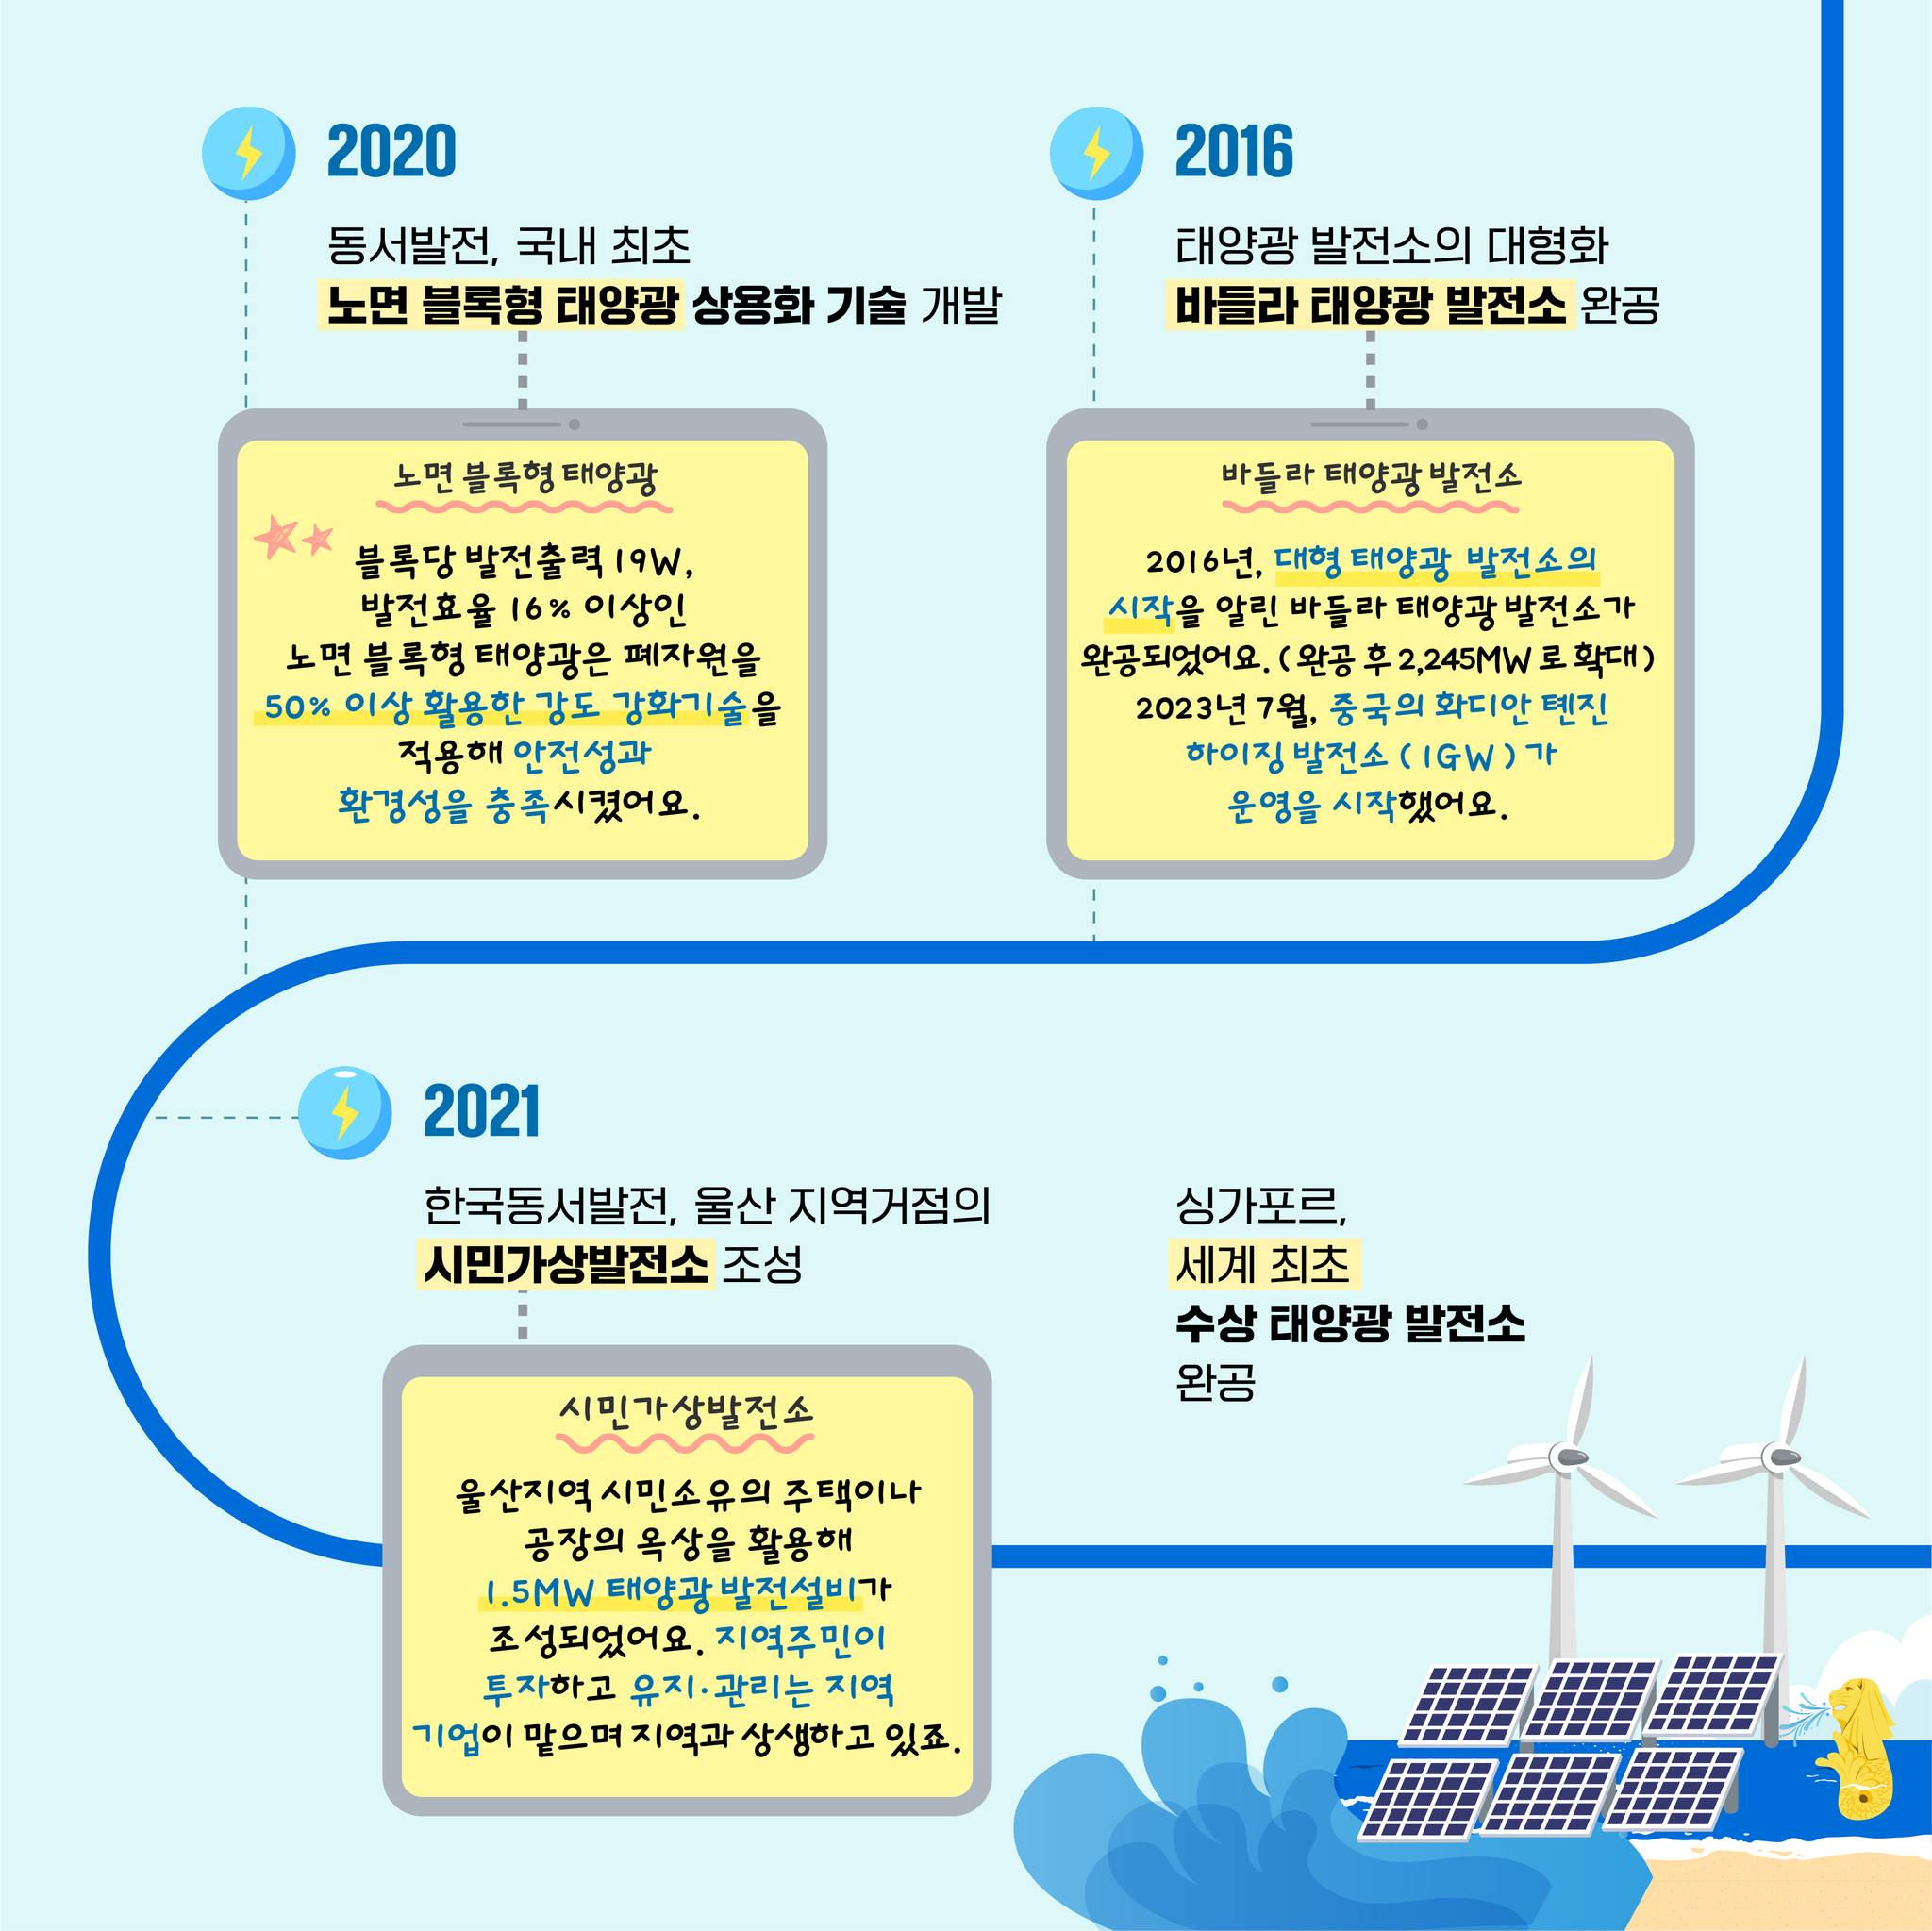 2016  태양광 발전소의 대형화 바들라 태양광 발전소 완공 바들라 태양광발전소 2016년, 대형 태양광 발전소의시작을 알린 바라 태양광발전소가  완공되었어요. (완공 후 2,245MW 로 확대)2023년 7월, 중국의 화디안  톈진하이징 발전소 (IGW)가운영을 시작했어요. 2020동서발전, 국내 최초 노면 블록형 태양광 상용화 기술 개발 노면 블록형 태양광 블록당 발전출력 19W, 발전효율 16% 이상인노면 블록형  태양광은 폐자원을50% 이상 활용한 강도 강화기술을적용해 안전성과환경성을 충족시켰어요. 2021 한국동서발전, 울산 지역거점의 시민가상발전소 조성 시민가상발전소 울산지역 시민소유의 주택이나공장의 옥상을 활용해1.5MW 태양광  발전설비가조성되었어요. 지역주민이투자하고 유지·관리는 지역기업이  맡으며 지역과 상생하고 있죠. 싱가포르,세계 최초수상 태양광 발전소완공